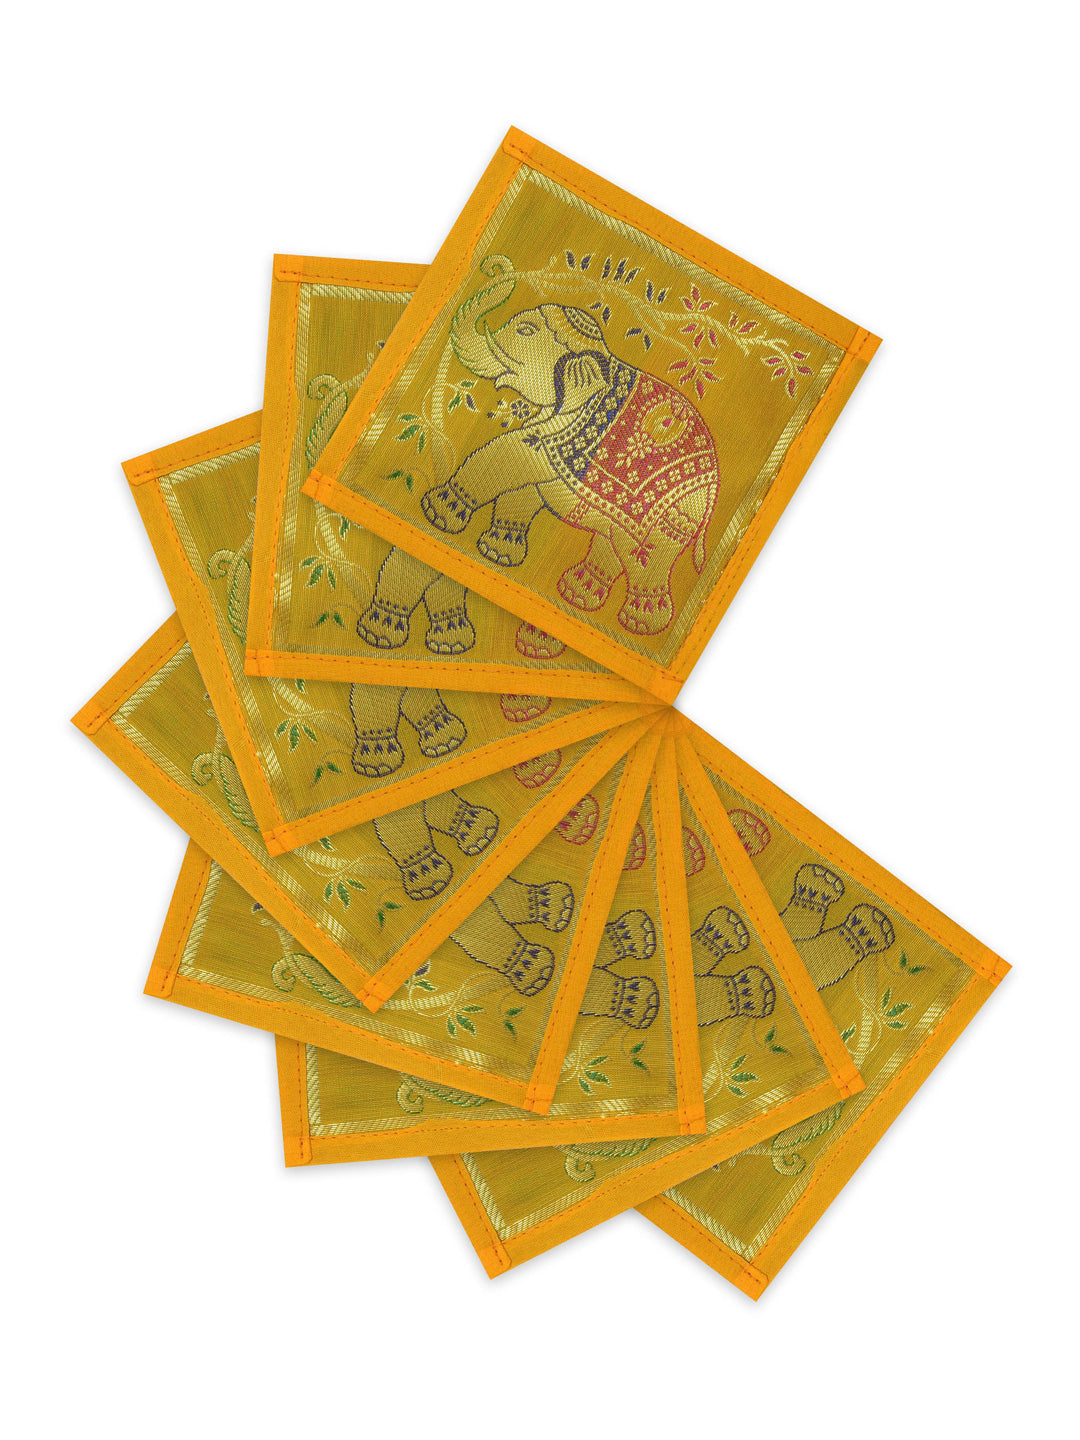 Banarasi Zari Set of 6 Placemats with 6 Coasters